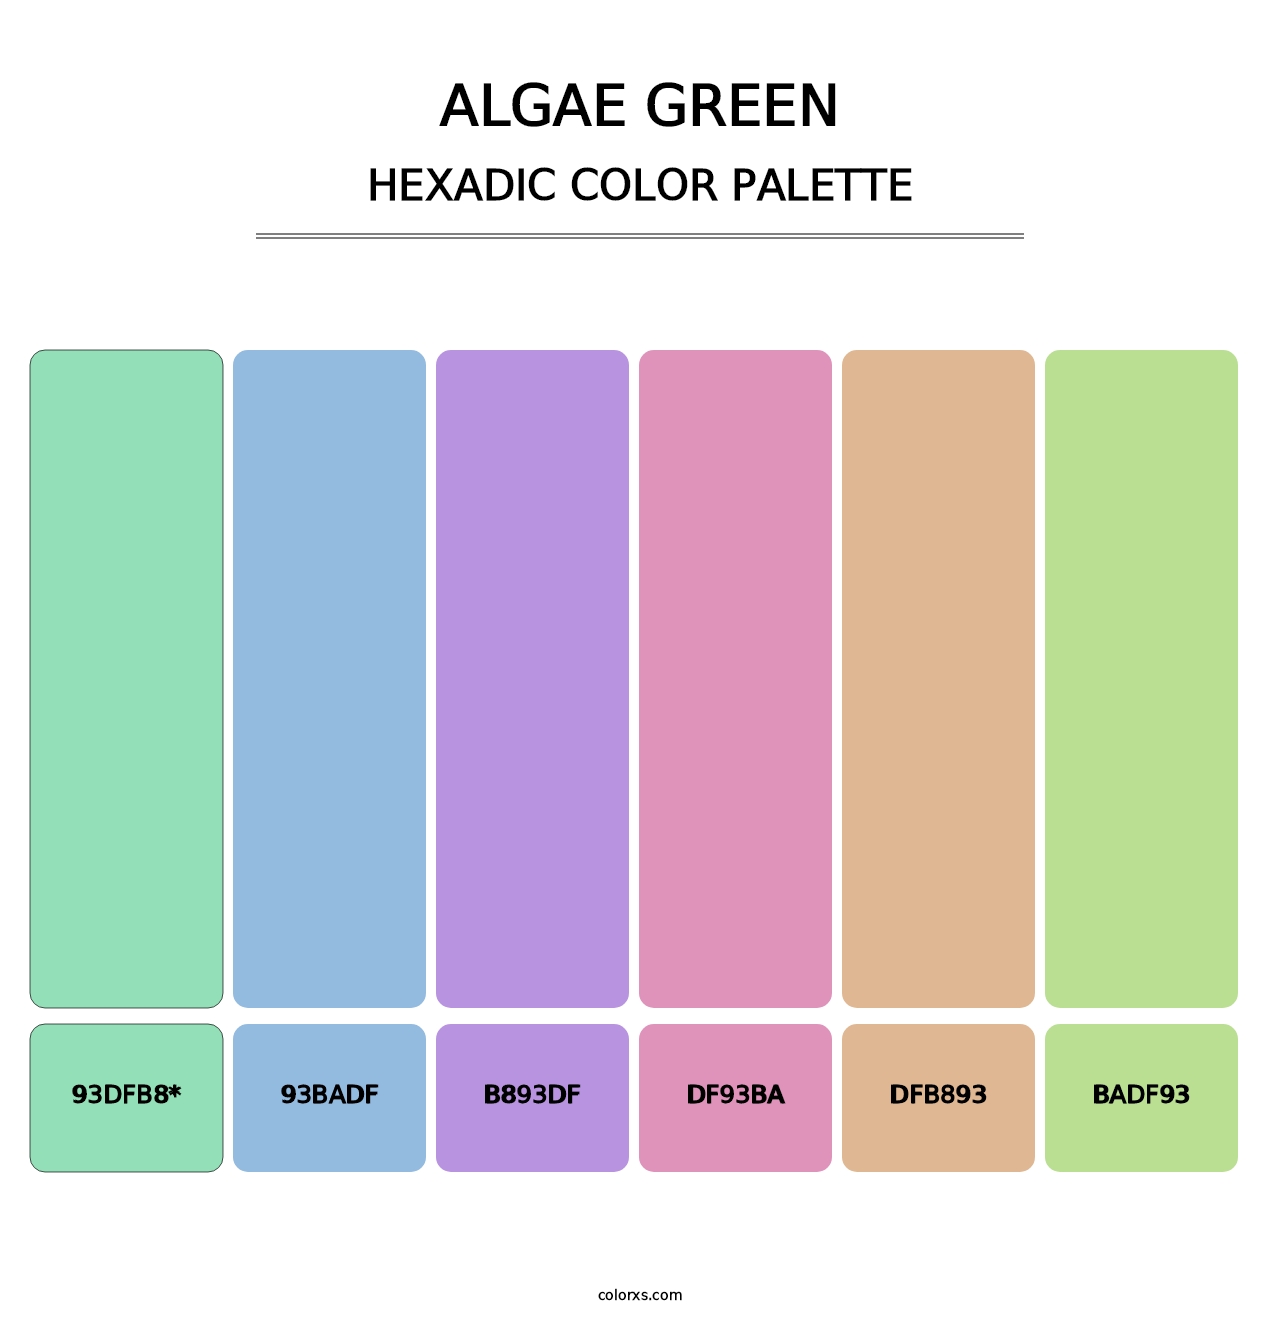 Algae Green - Hexadic Color Palette